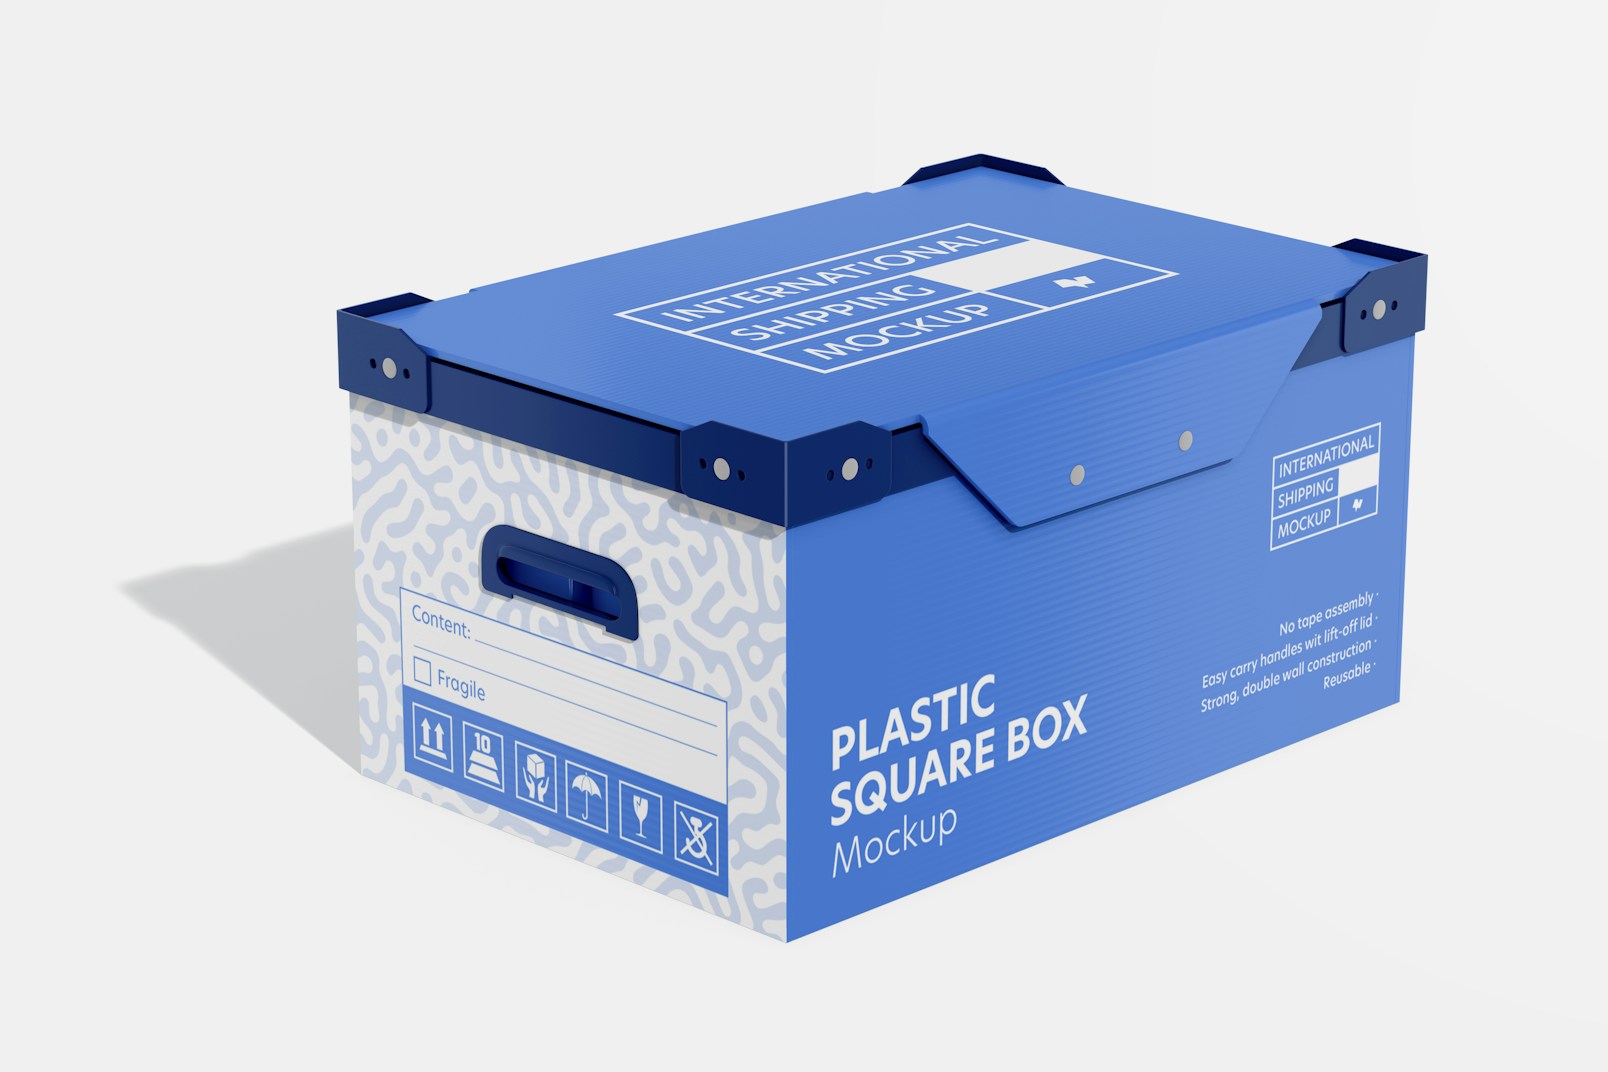 Plastic Square Box Mockup, Perspective